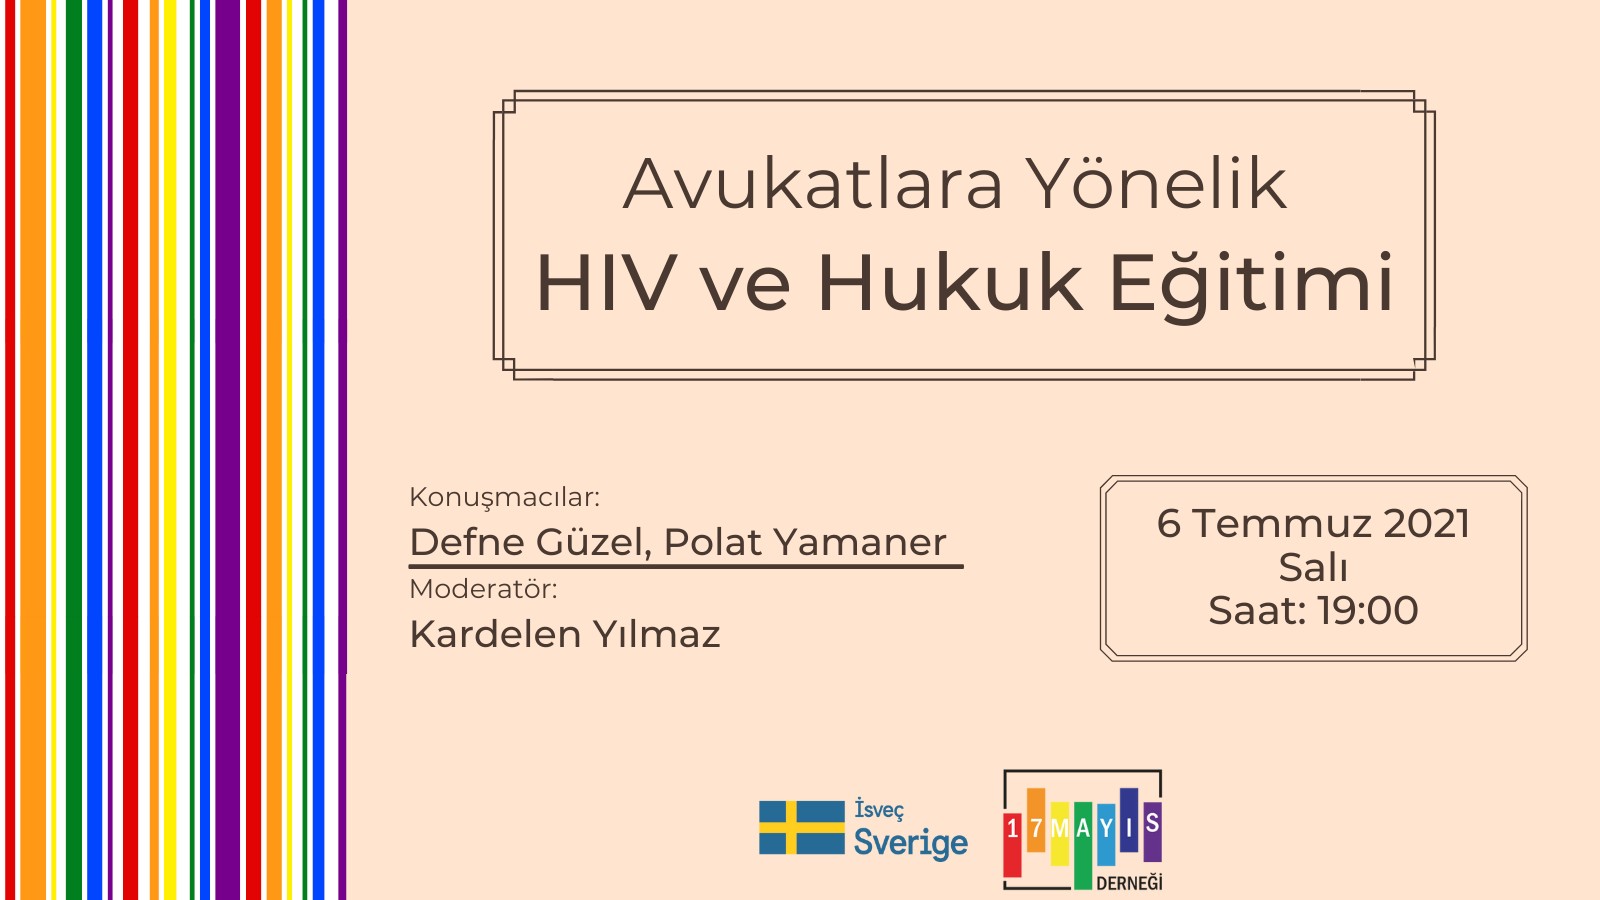 Avukatlara Dönük "HIV ve Hukuk" Eğitimine Kayıtlar Başladı! - 17 Mayıs